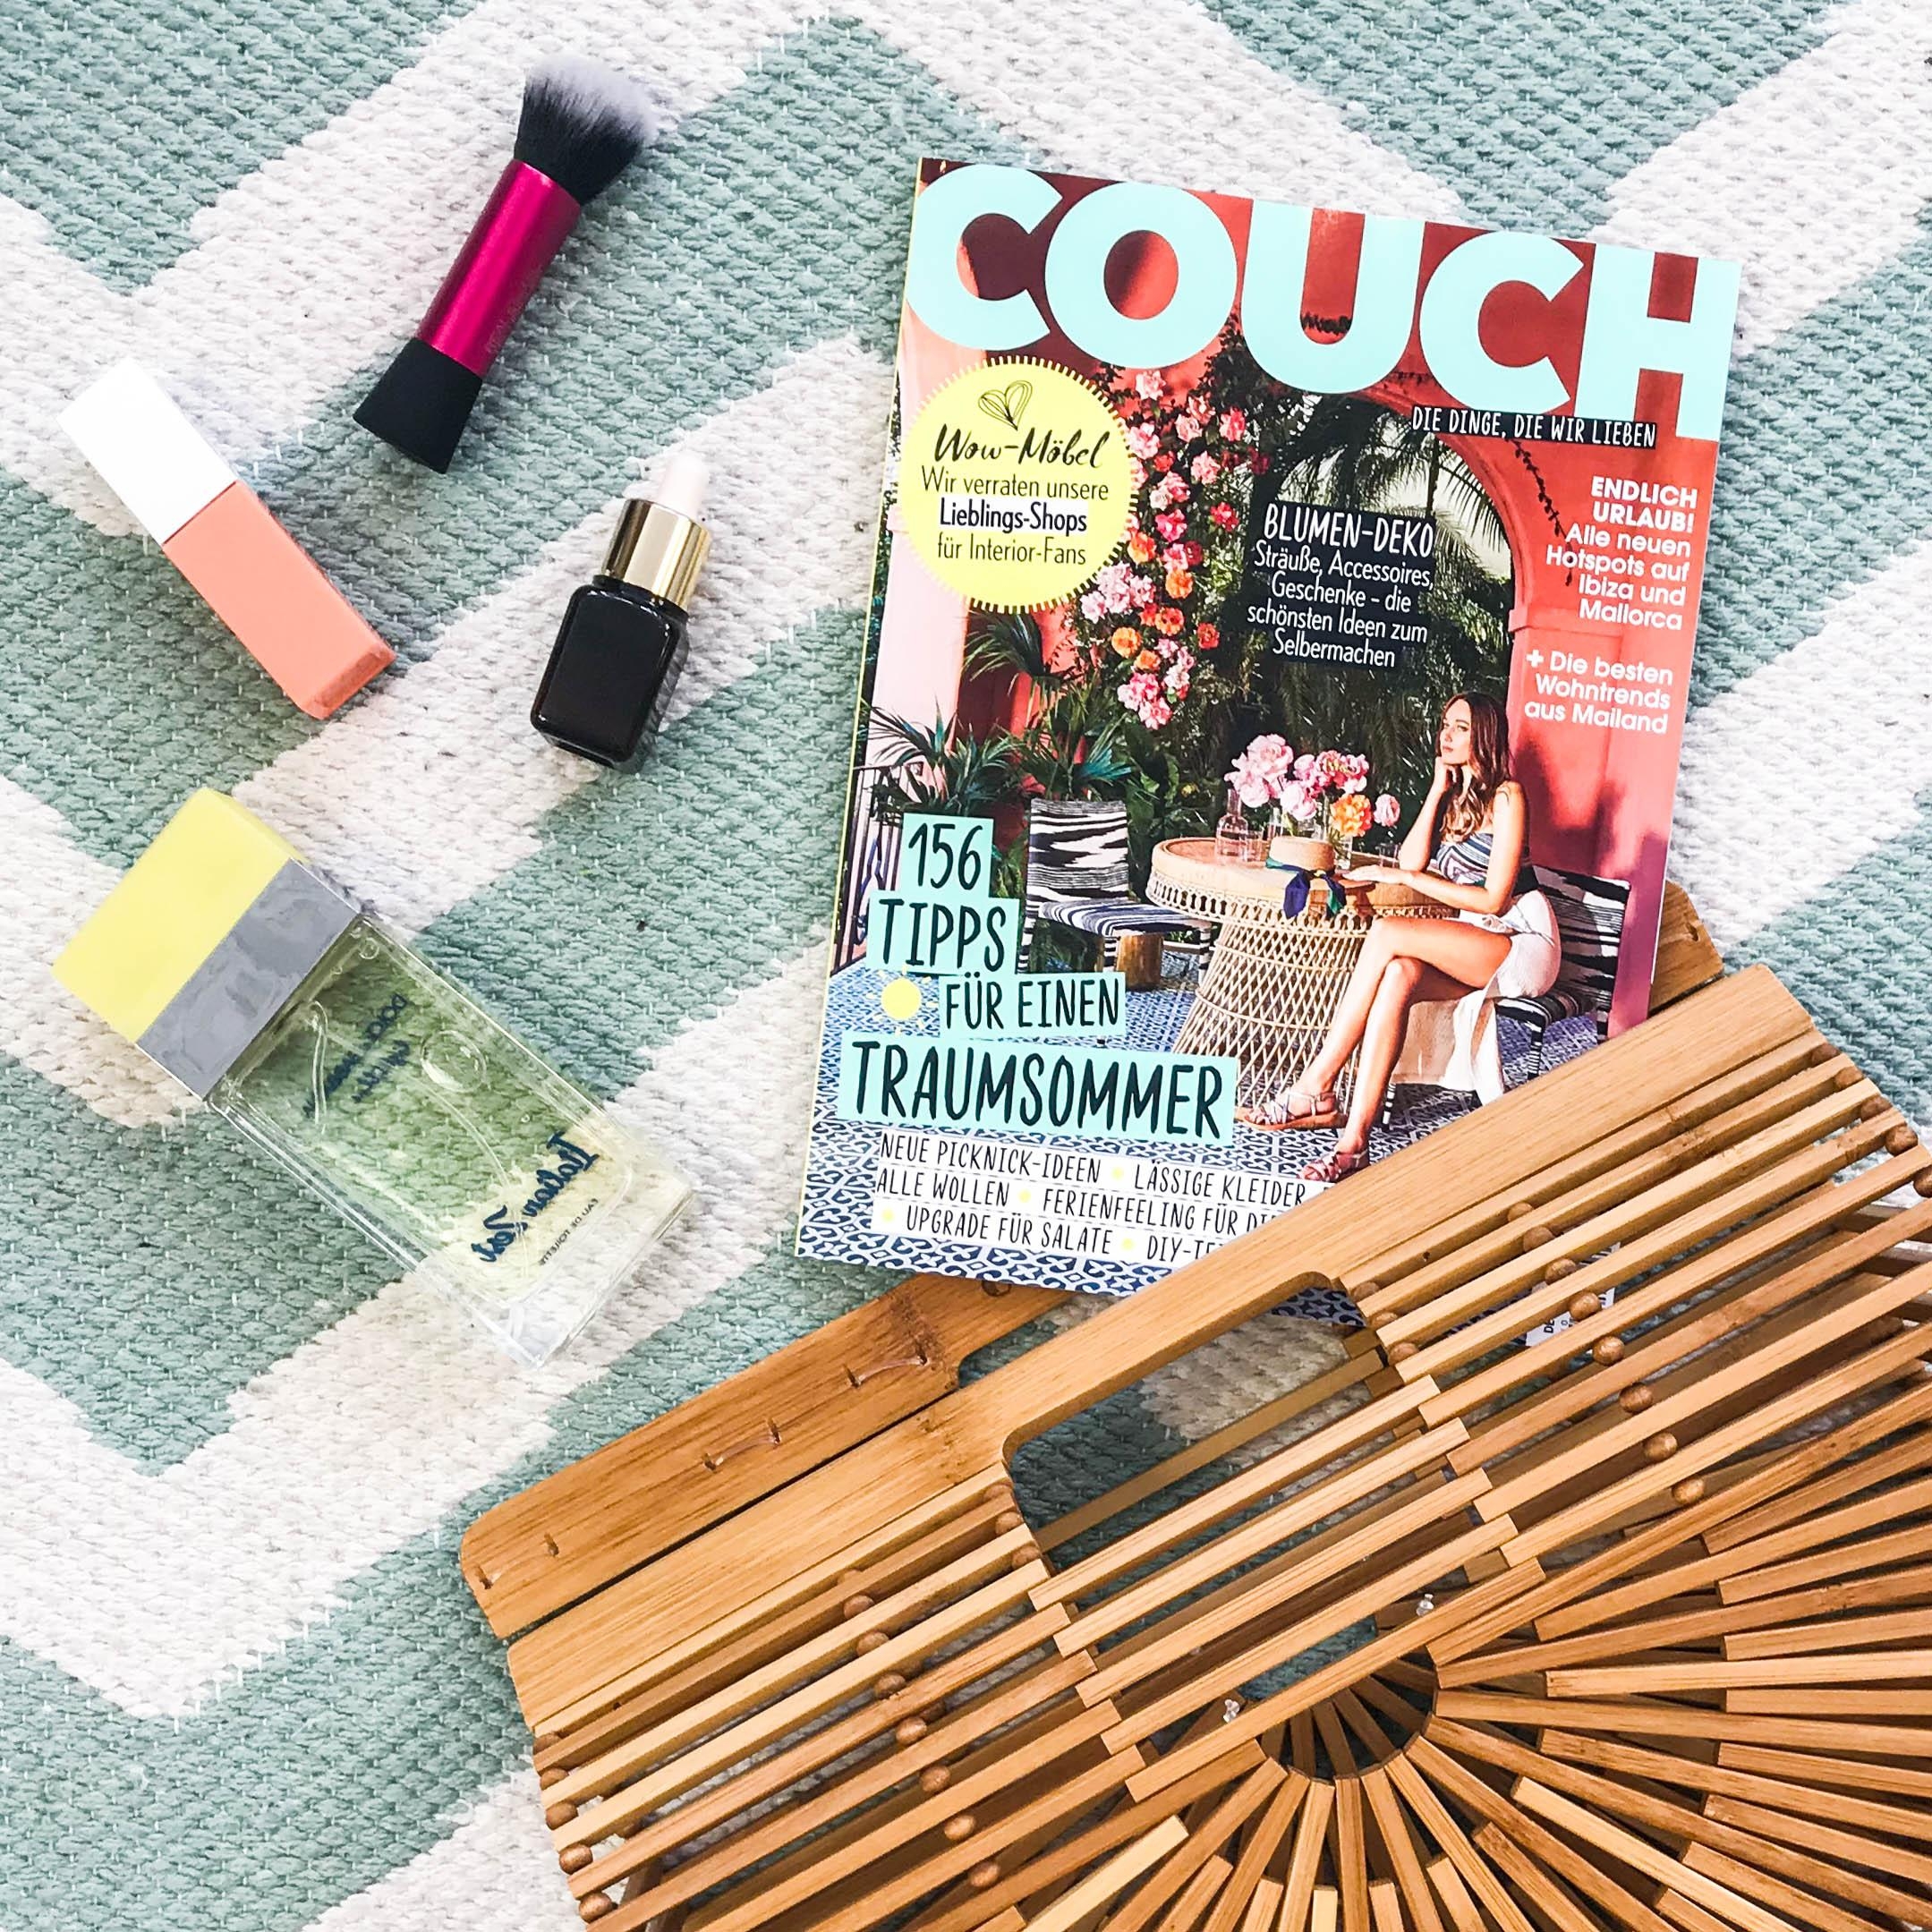 Die neue COUCH ist da!☀️ Freut euch auf unsere Must-haves für einen Traumsommer und vieles mehr! #couchmagazin #couchabo